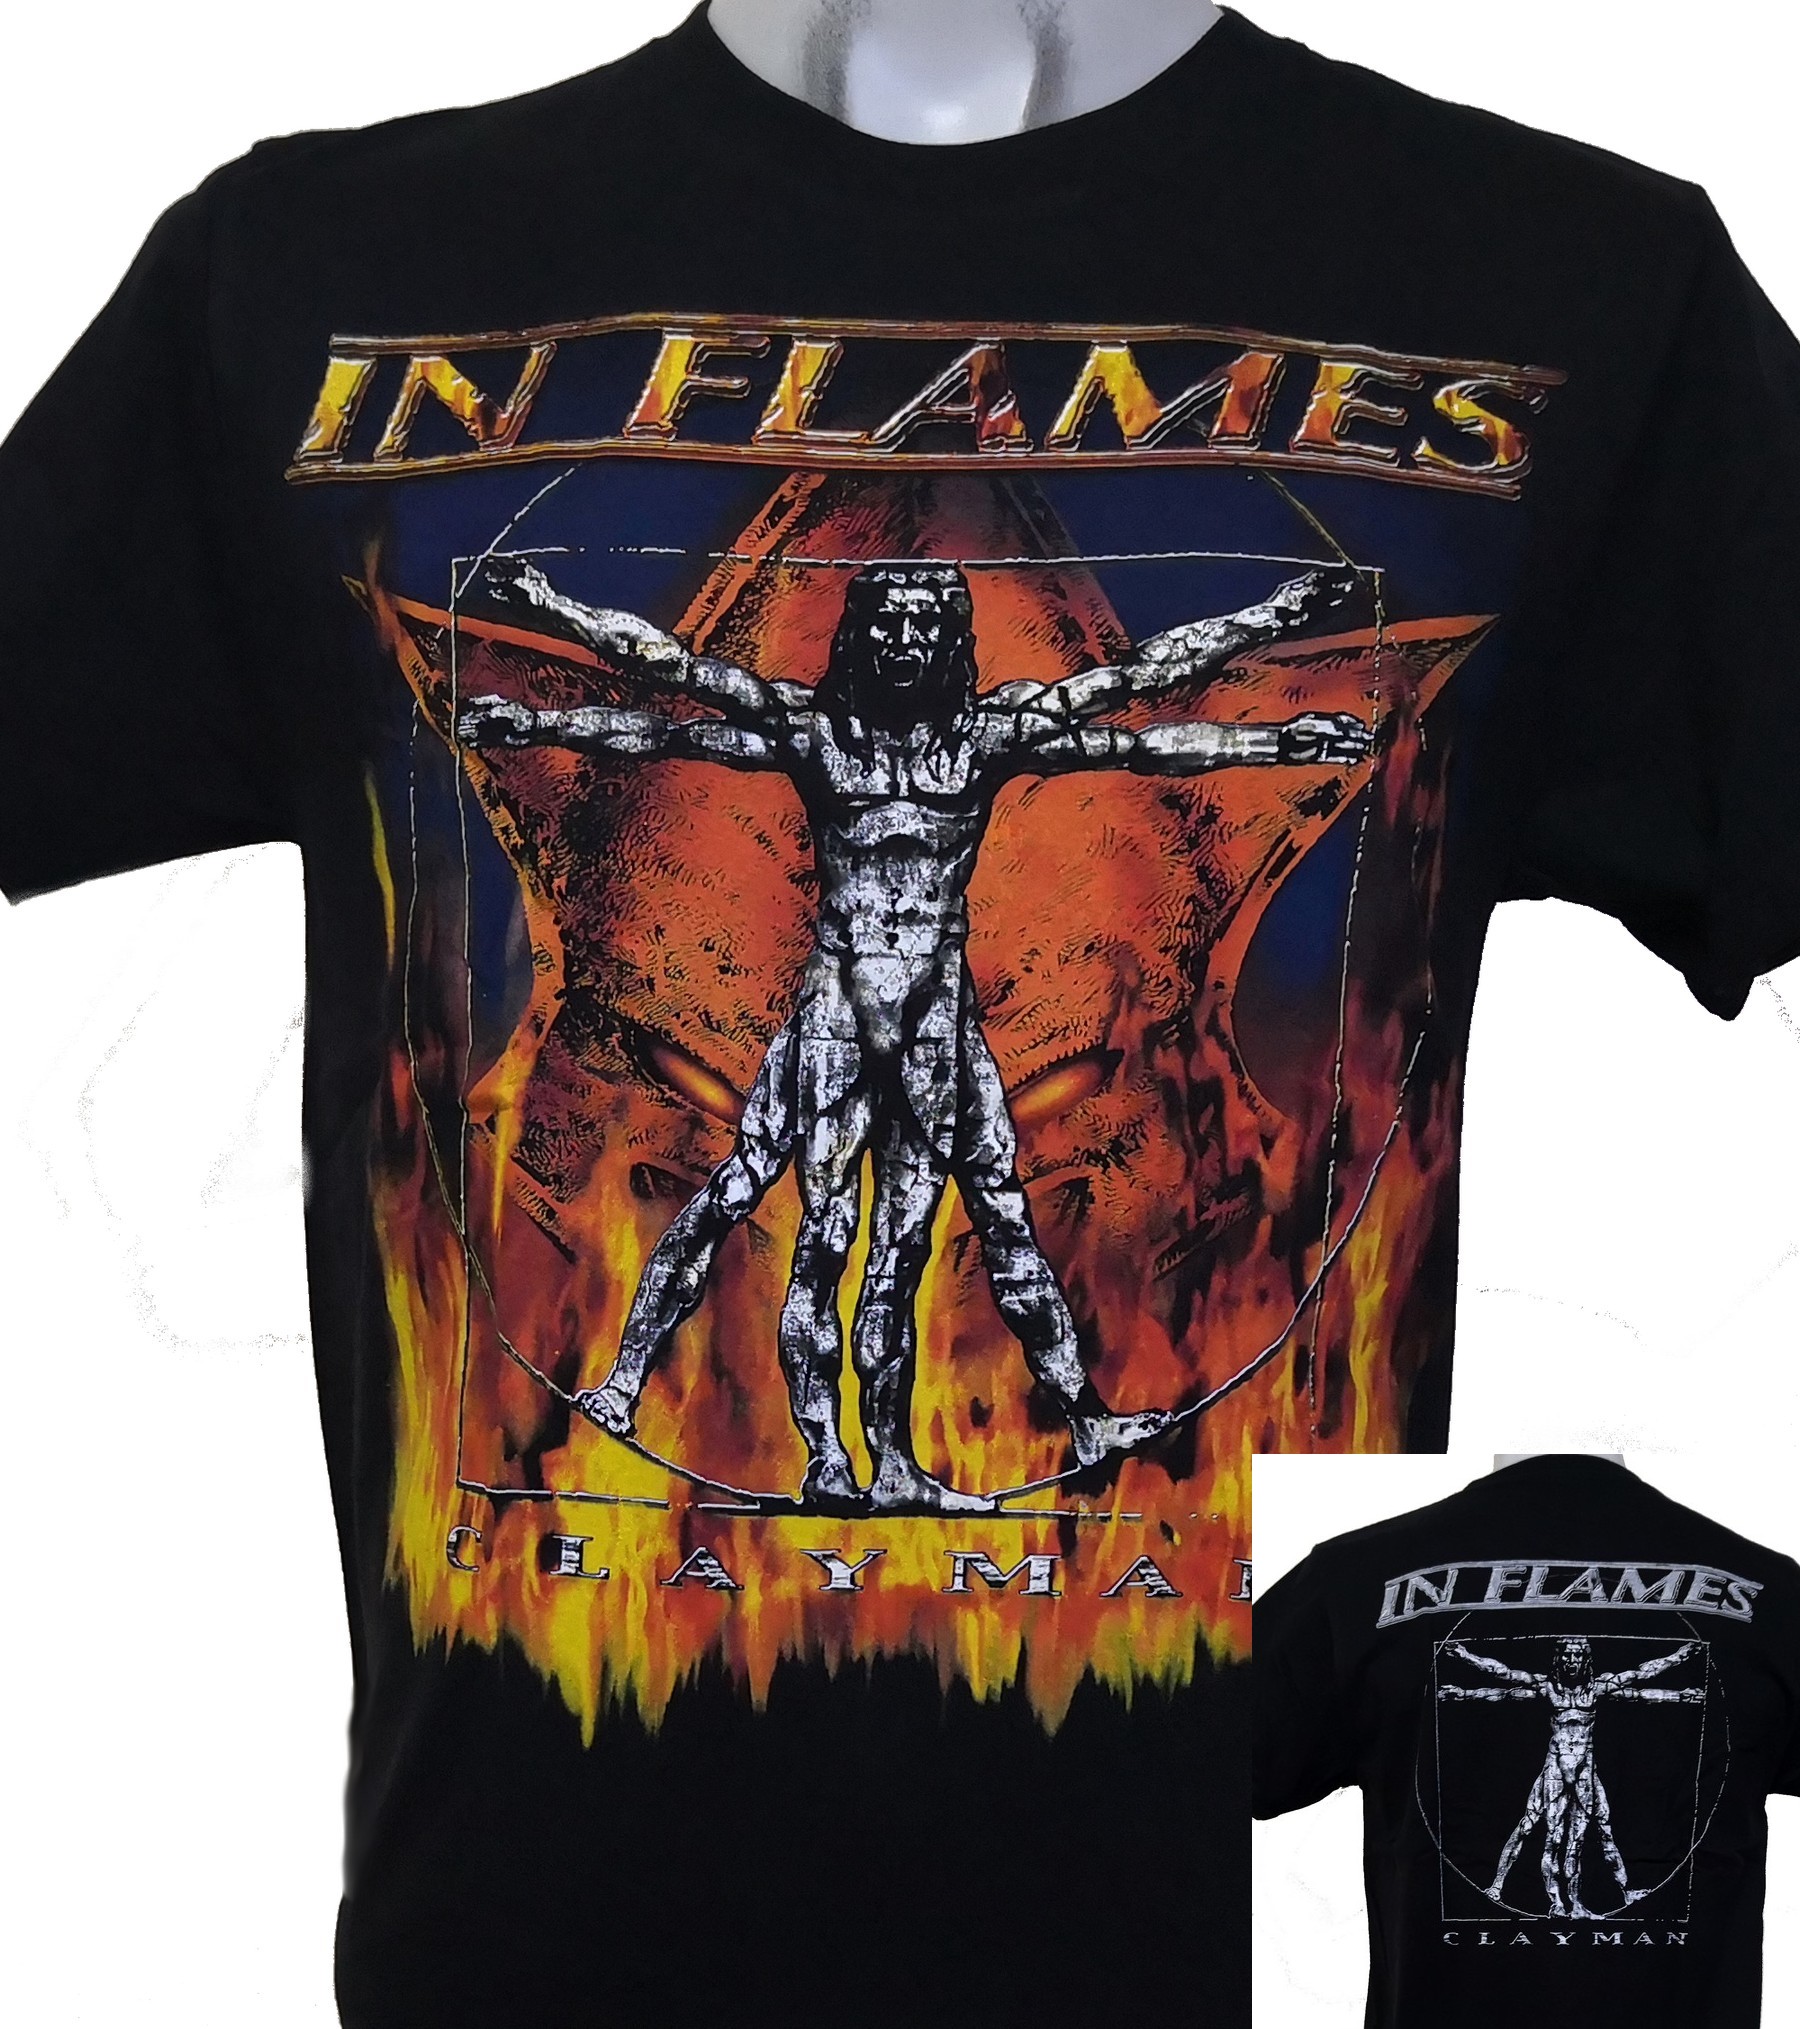 Ledig patologisk Danser In Flames t-shirt Clayman size M – RoxxBKK